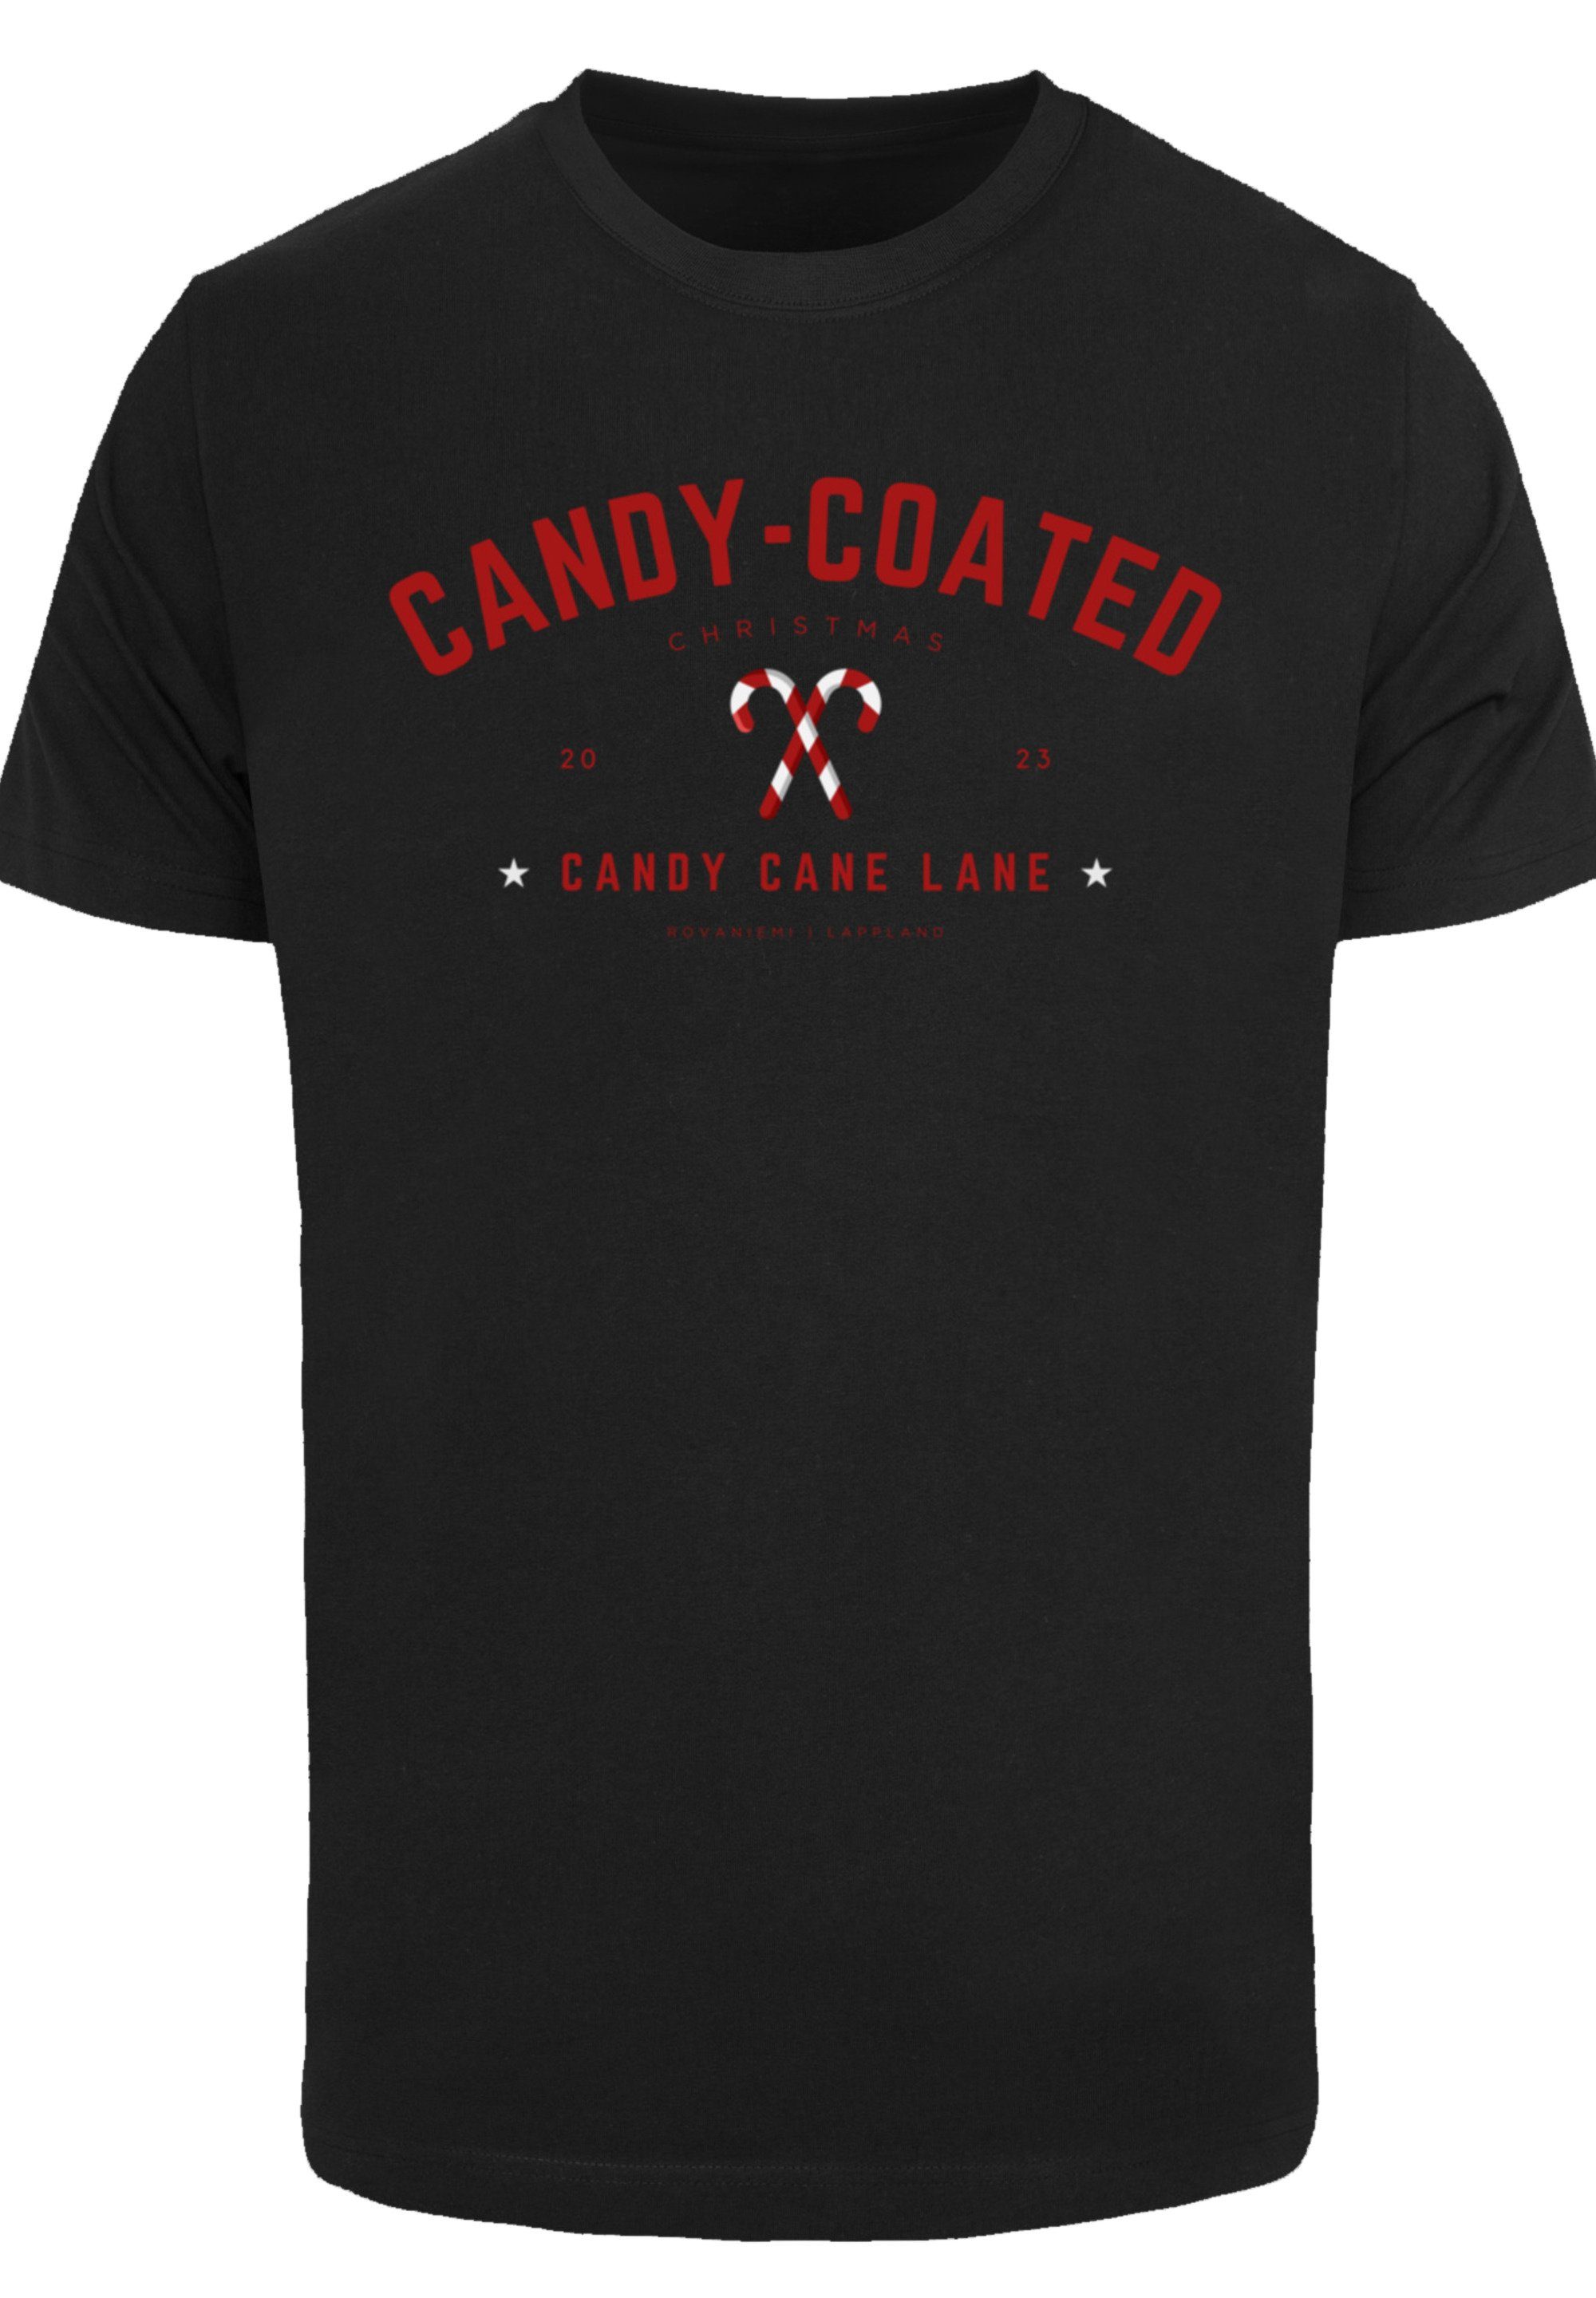 F4NT4STIC Weihnachten, T-Shirt Logo schwarz Weihnachten Geschenk, Coated Christmas Candy